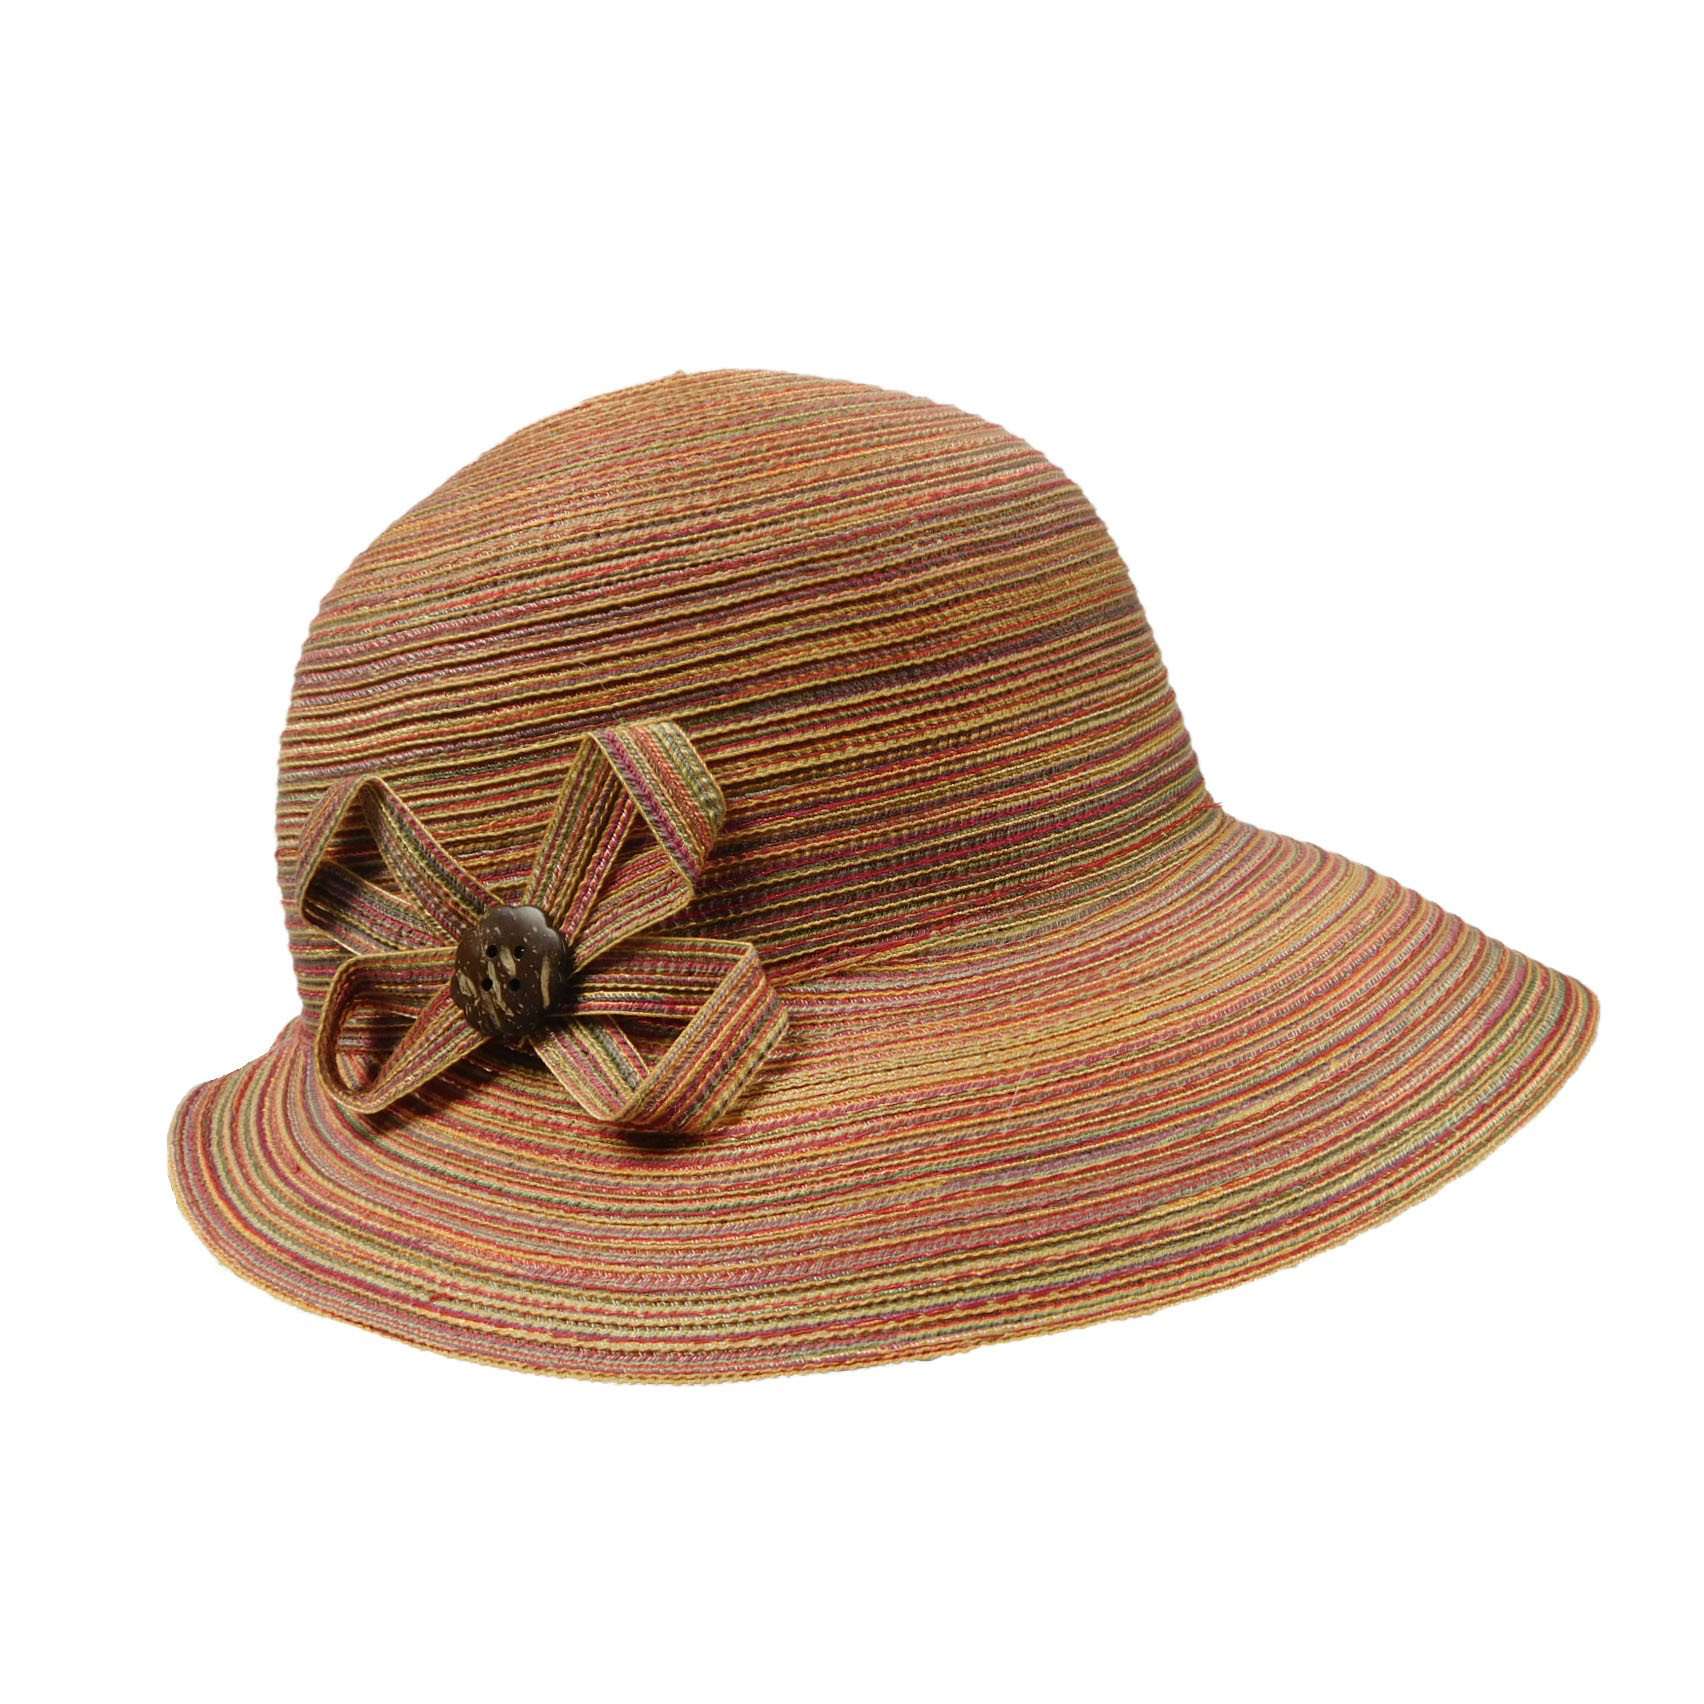 Polybraid Bonnet Cap with Button Accent - Jeanne Simmons Hats Facesaver Hat Jeanne Simmons js8495SS Sunset Medium (57 cm) 